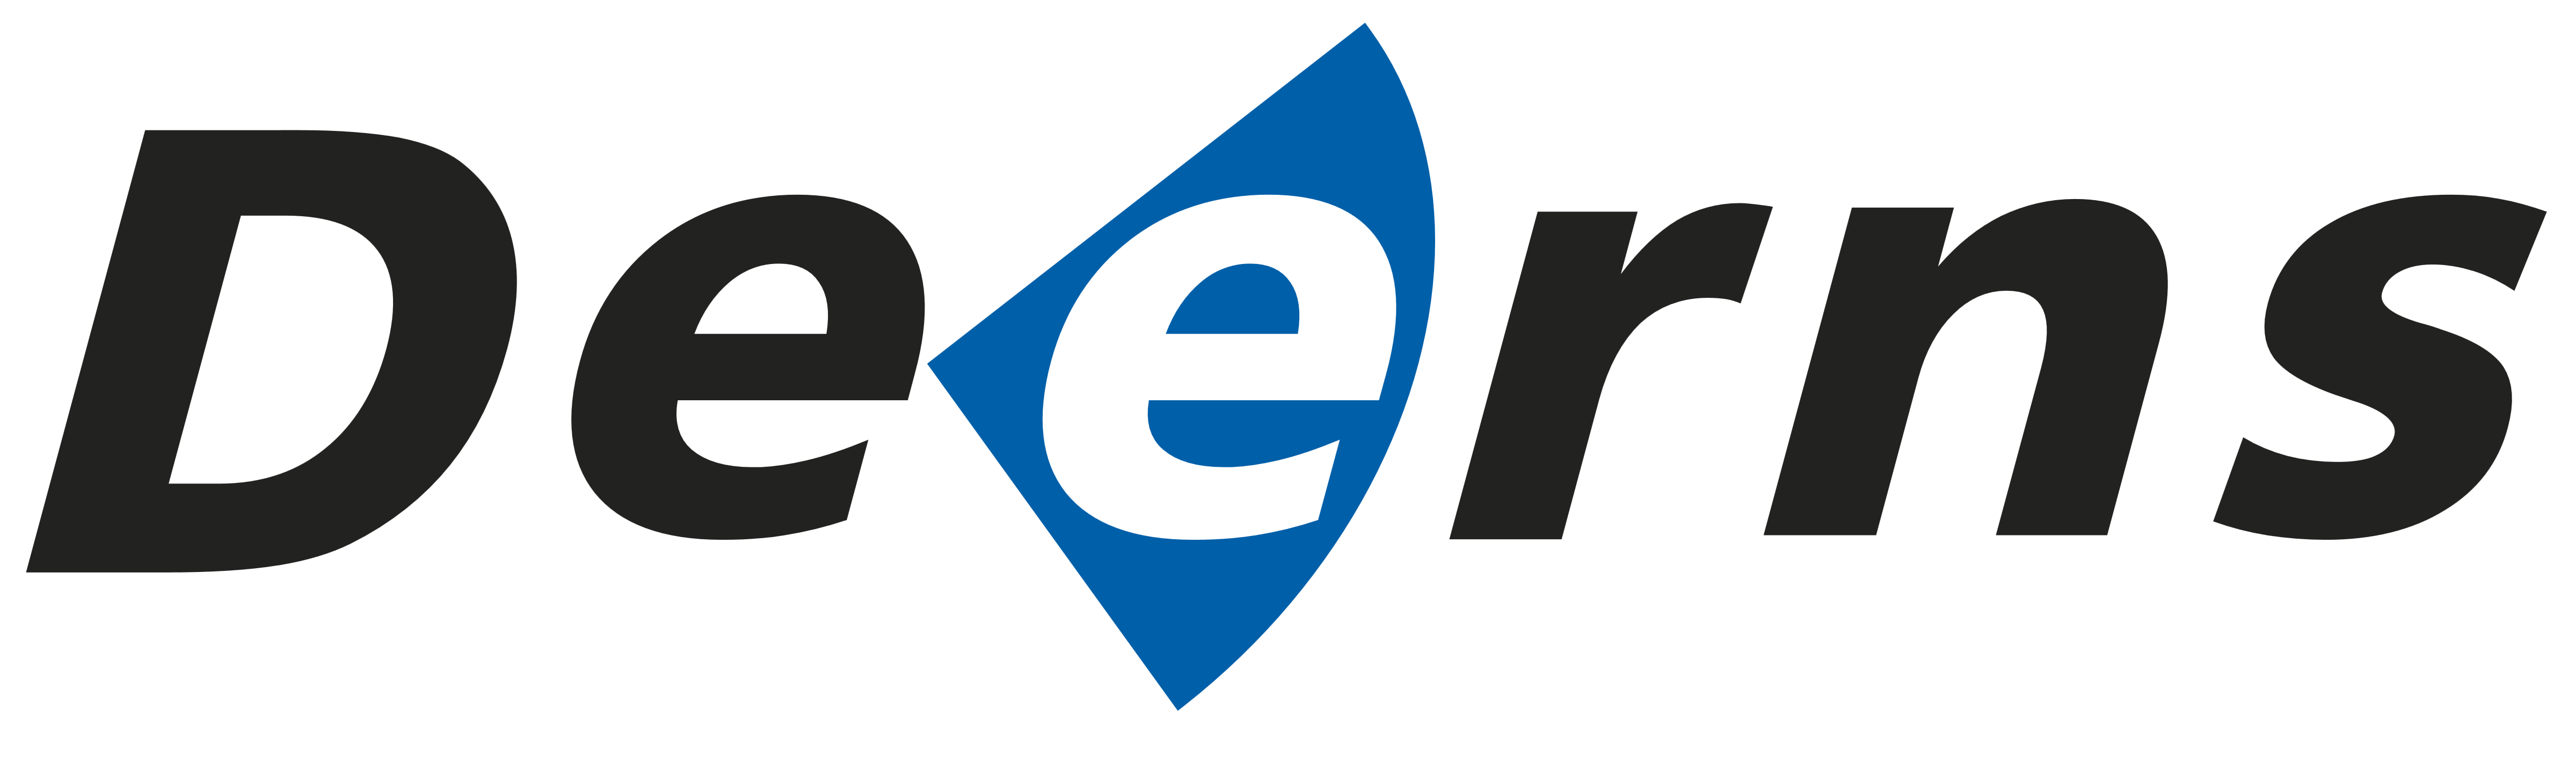 Deerns logo, logotype